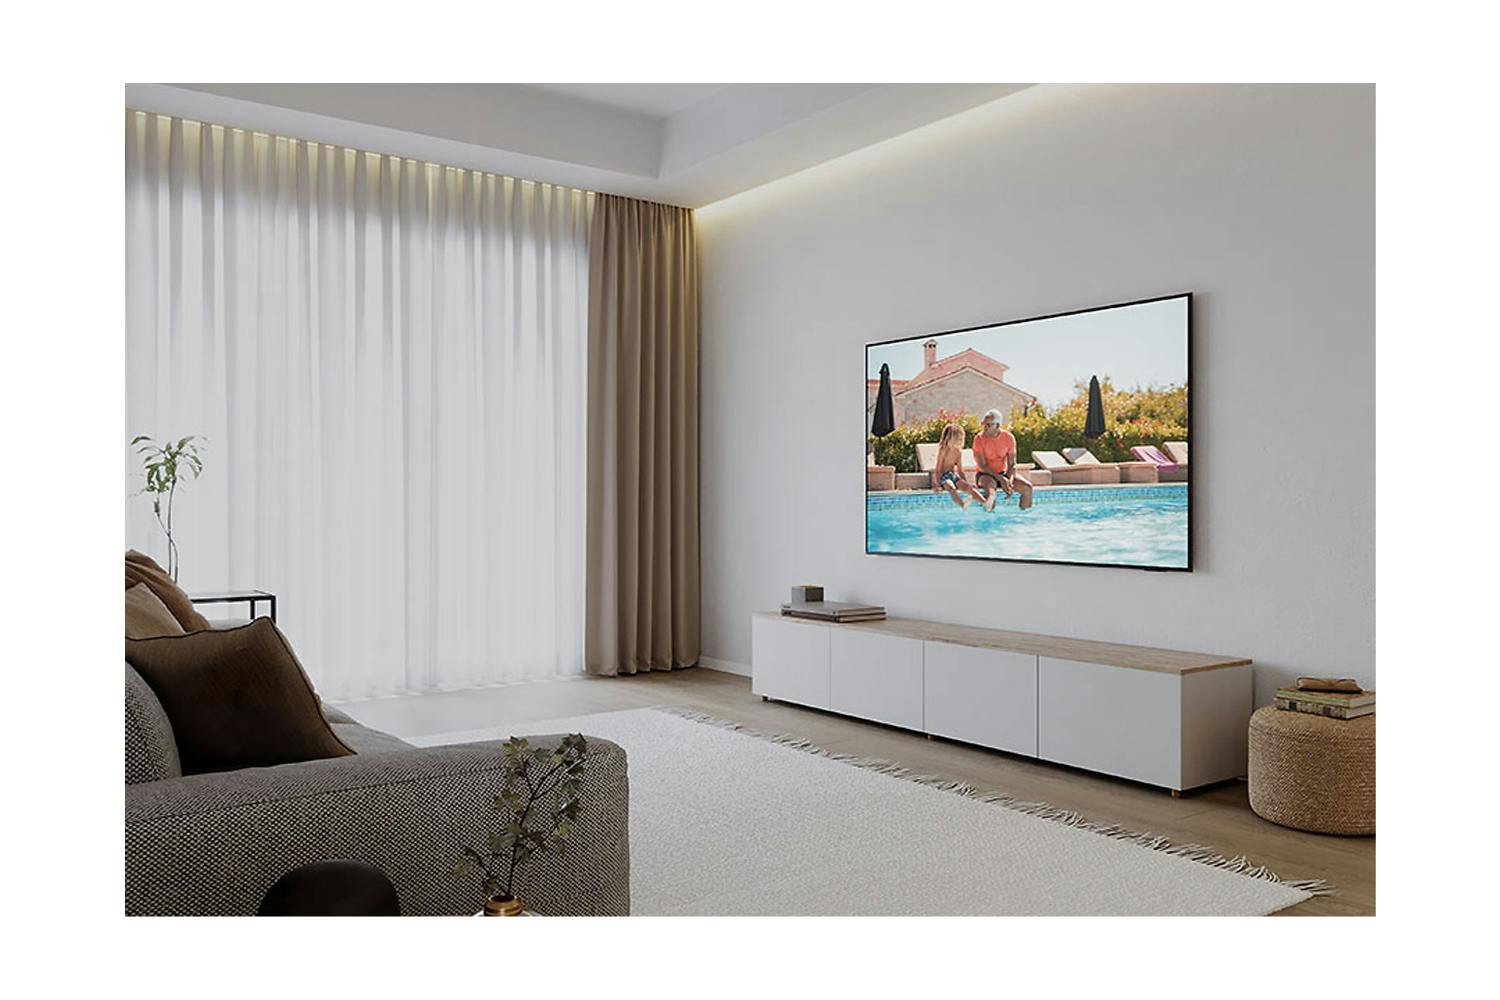 Samsung DU8070 43" Crystal UHD 4K HDR Smart TV (2024) | UE43DU8070UXXU